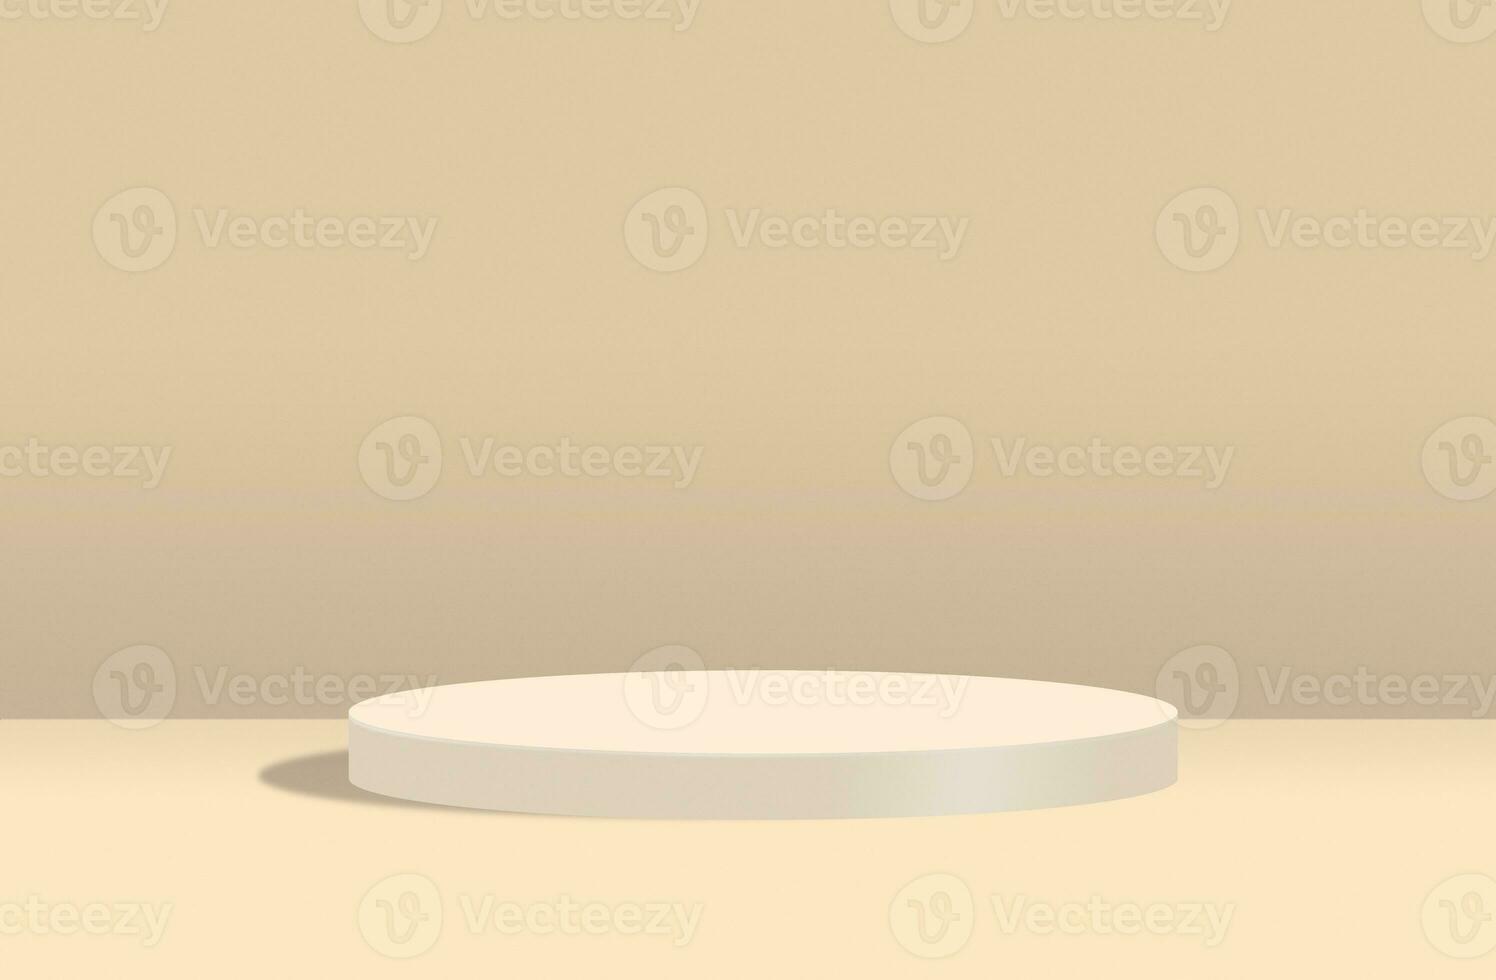 tömma minimalistisk cylindrisk piedestal på beige pastell bakgrund foto